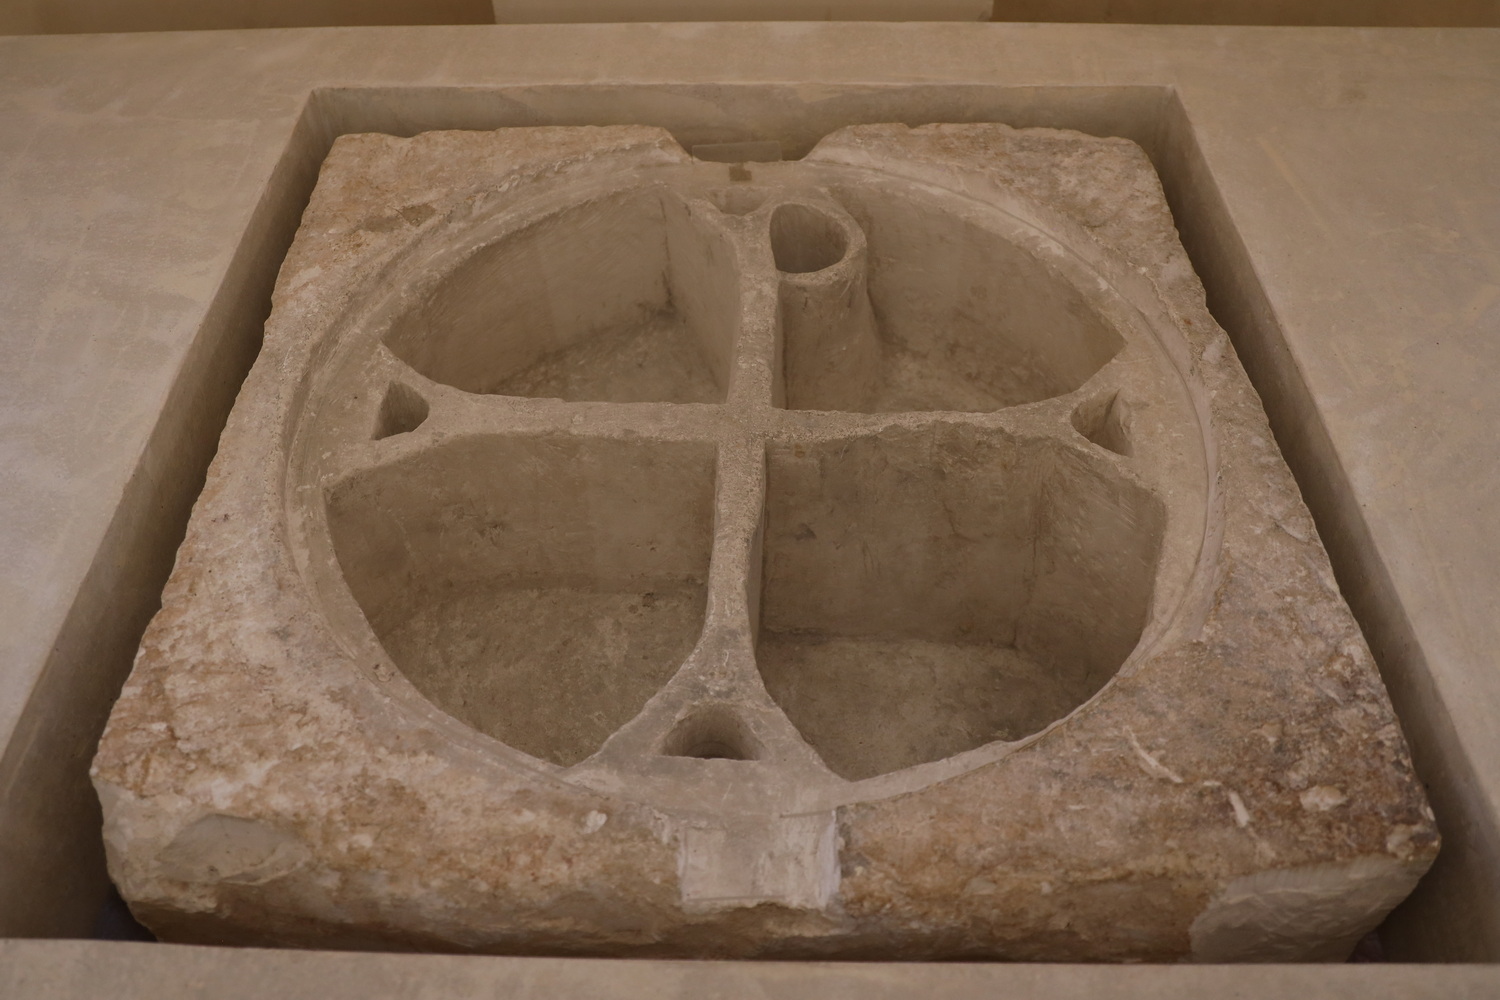 Behauener Stein mit 4 Kavitäten in Form des Monogramms Christi- Möglicherweise Verwendung zur Aufbewahrung von Reliquien des Heiligen Mauritius 5.-6. Jh